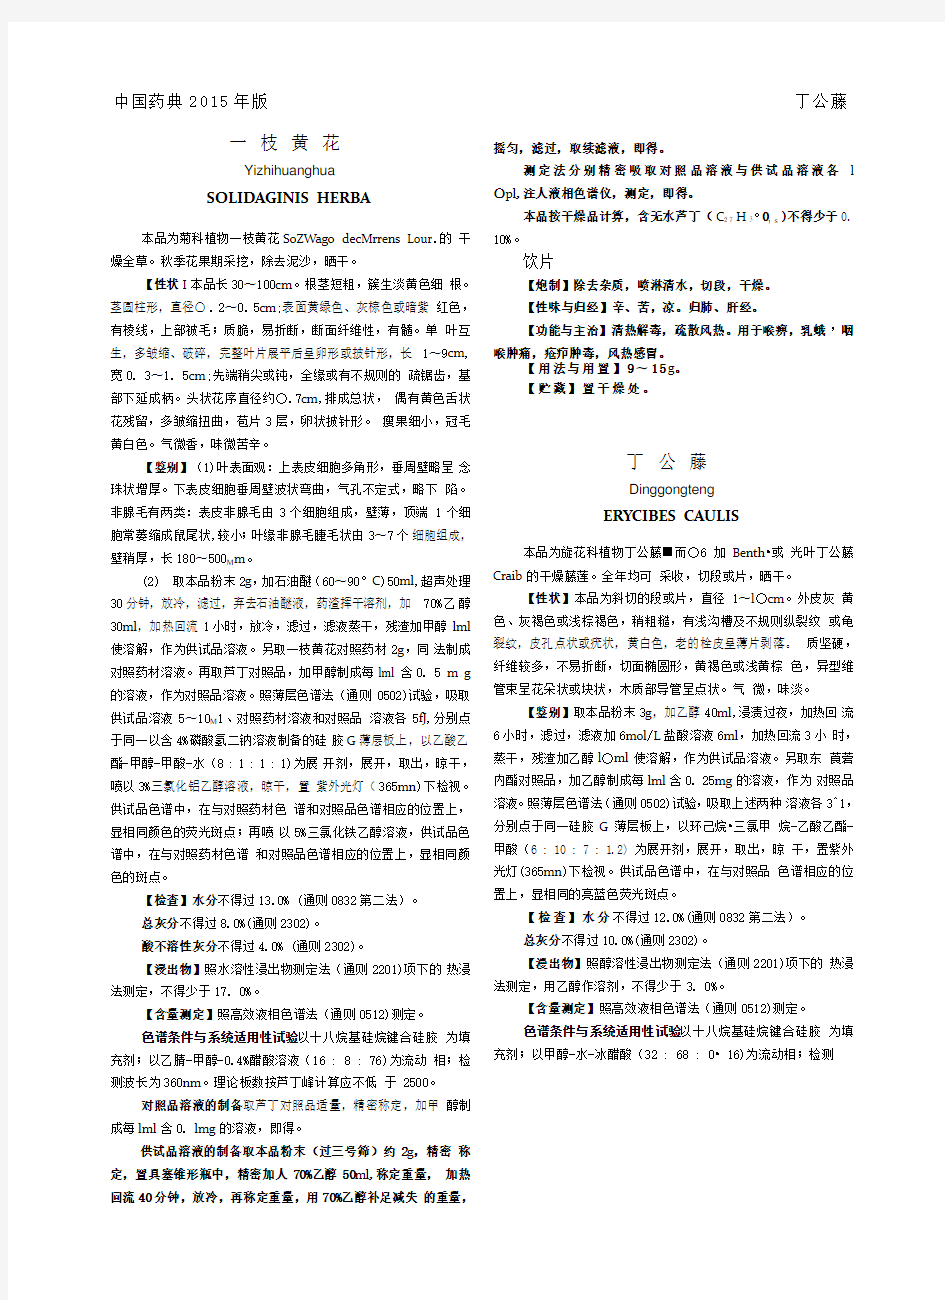 《中国药典》2015一部中药材部分Word版1-15页